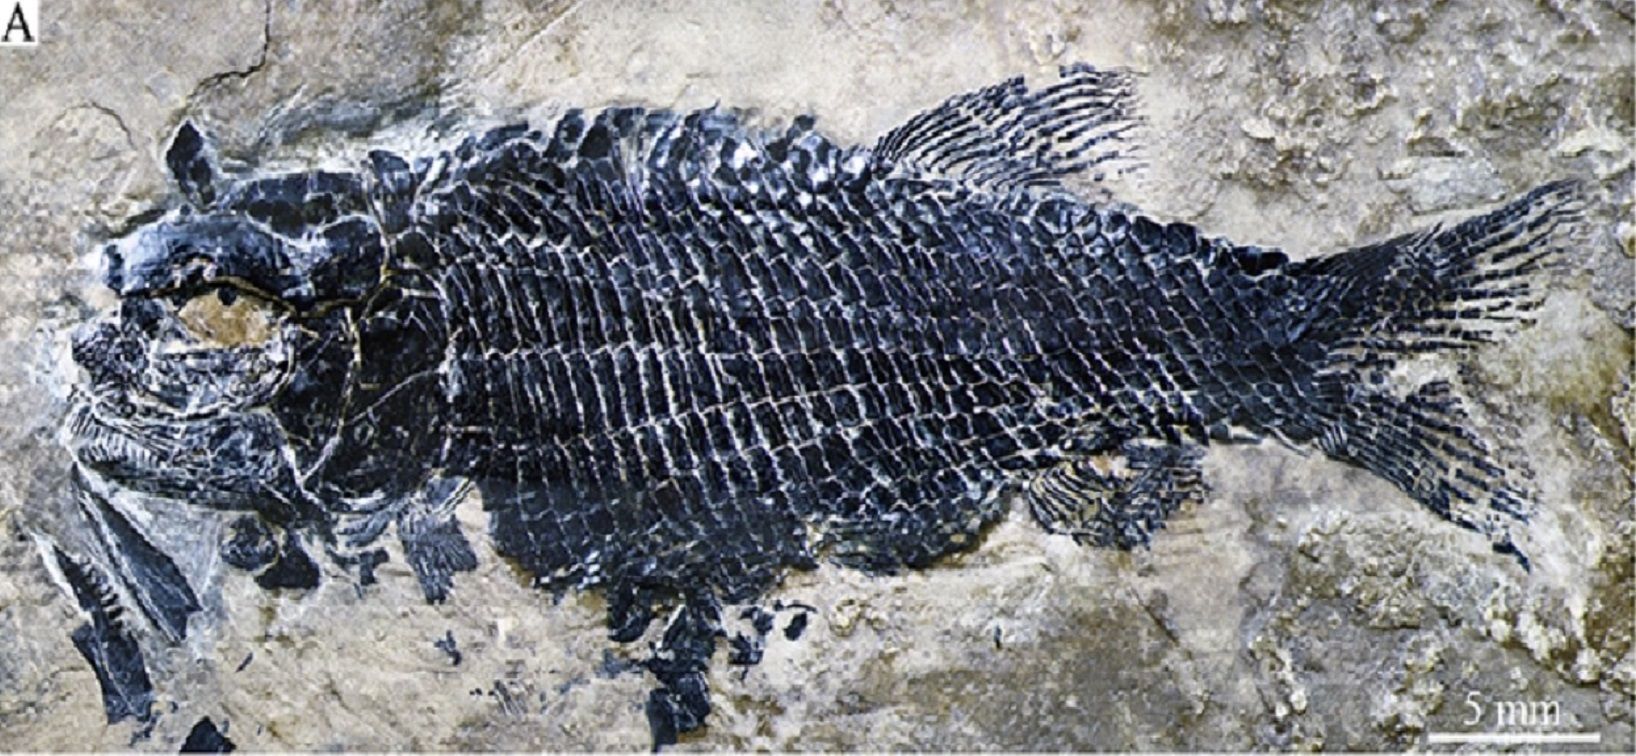 Плавала 200 миллионов лет назад: в Китае нашли древнейшую окаменелость рыбы в мире